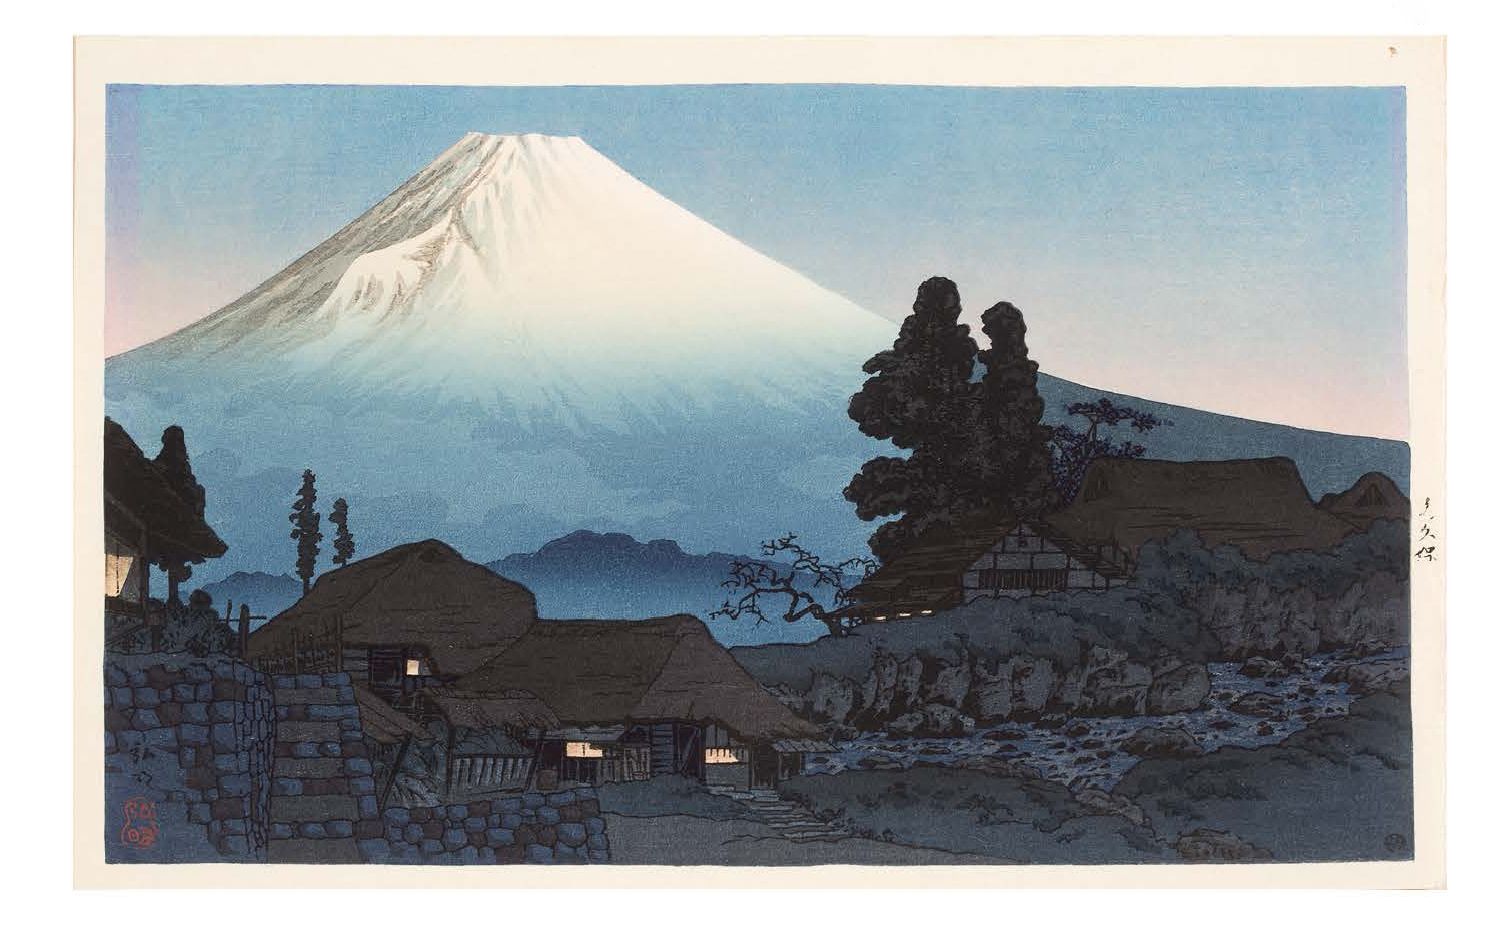 JAPON VERS 1938 Mount Fuji from Mizukubo
Print depicting Mount Fuji from Mizukub&hellip;